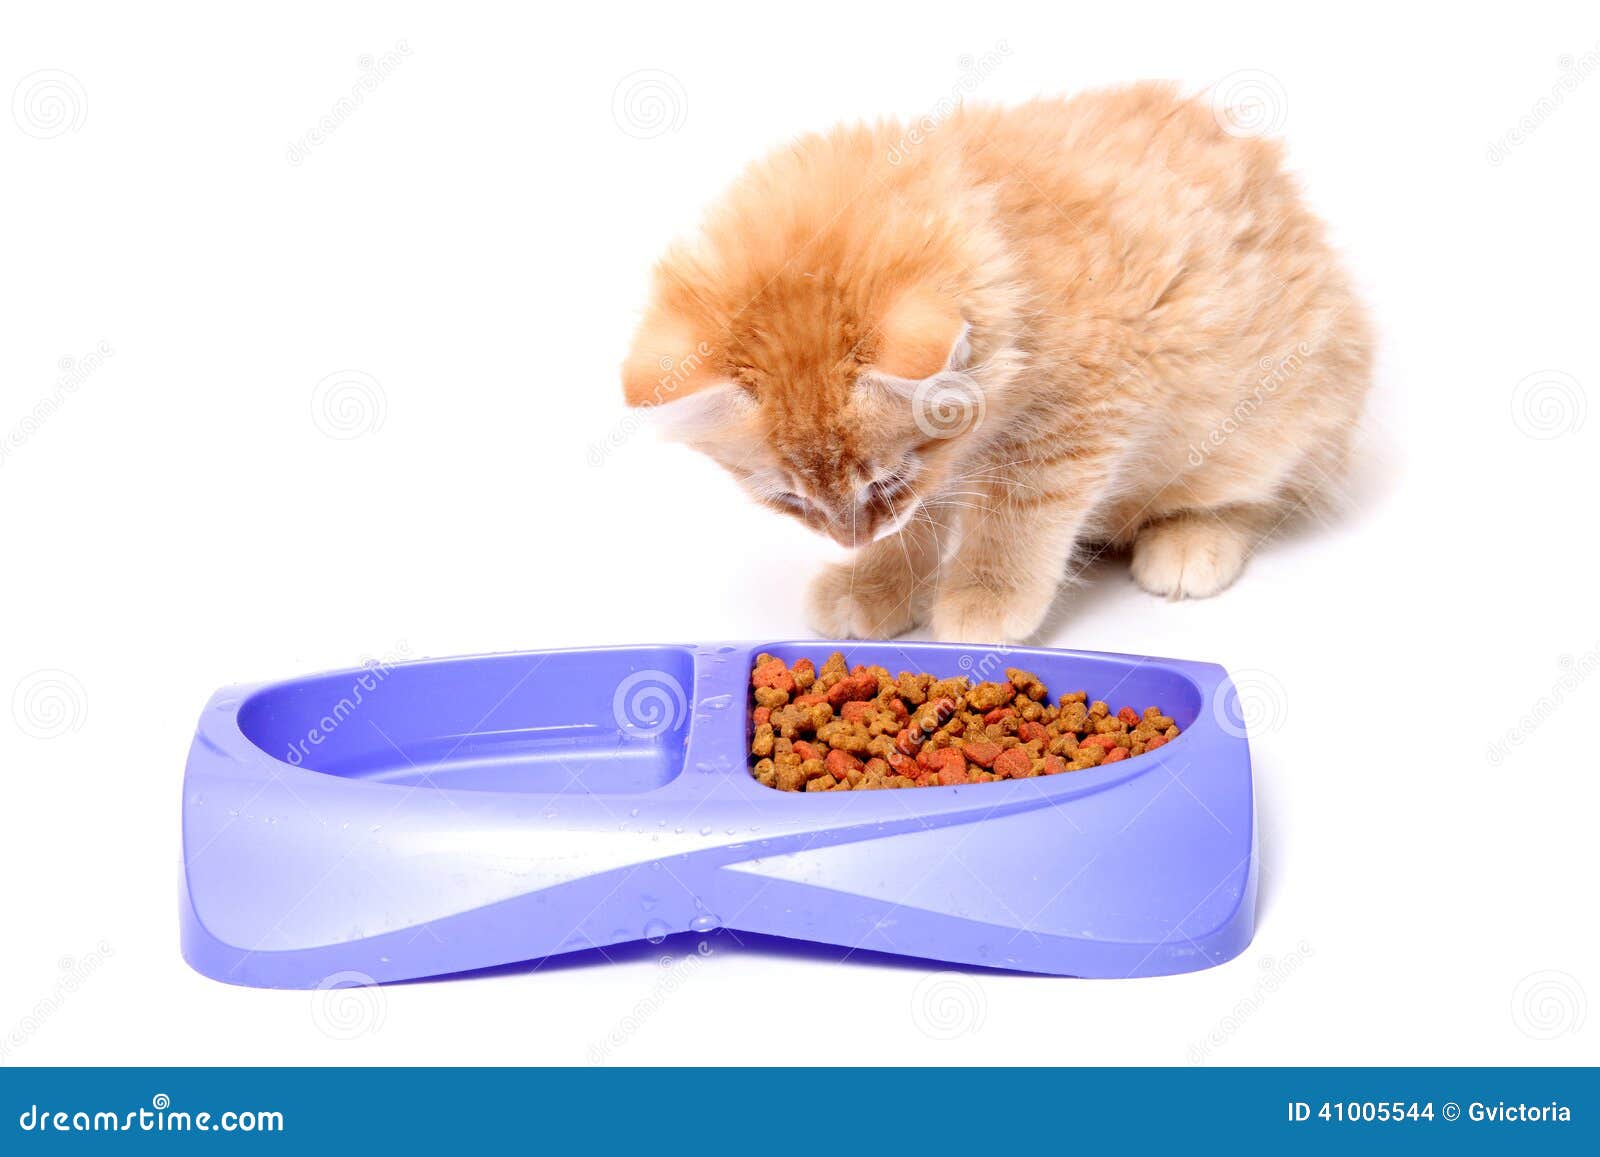 猫咪吃猫粮_高清图片素材